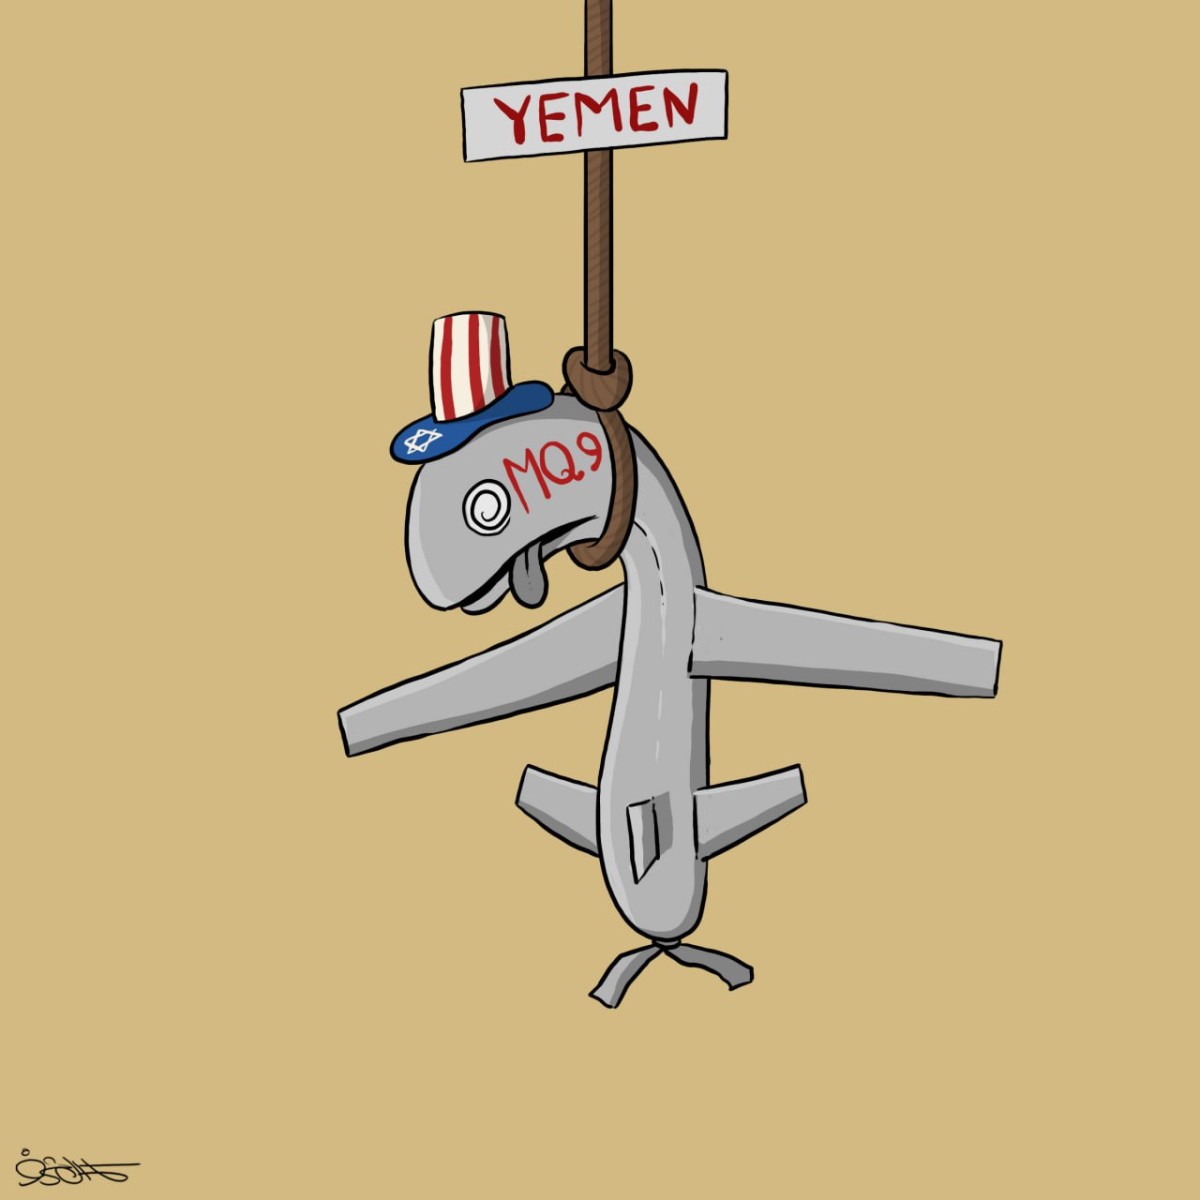 The achievement of Yemen